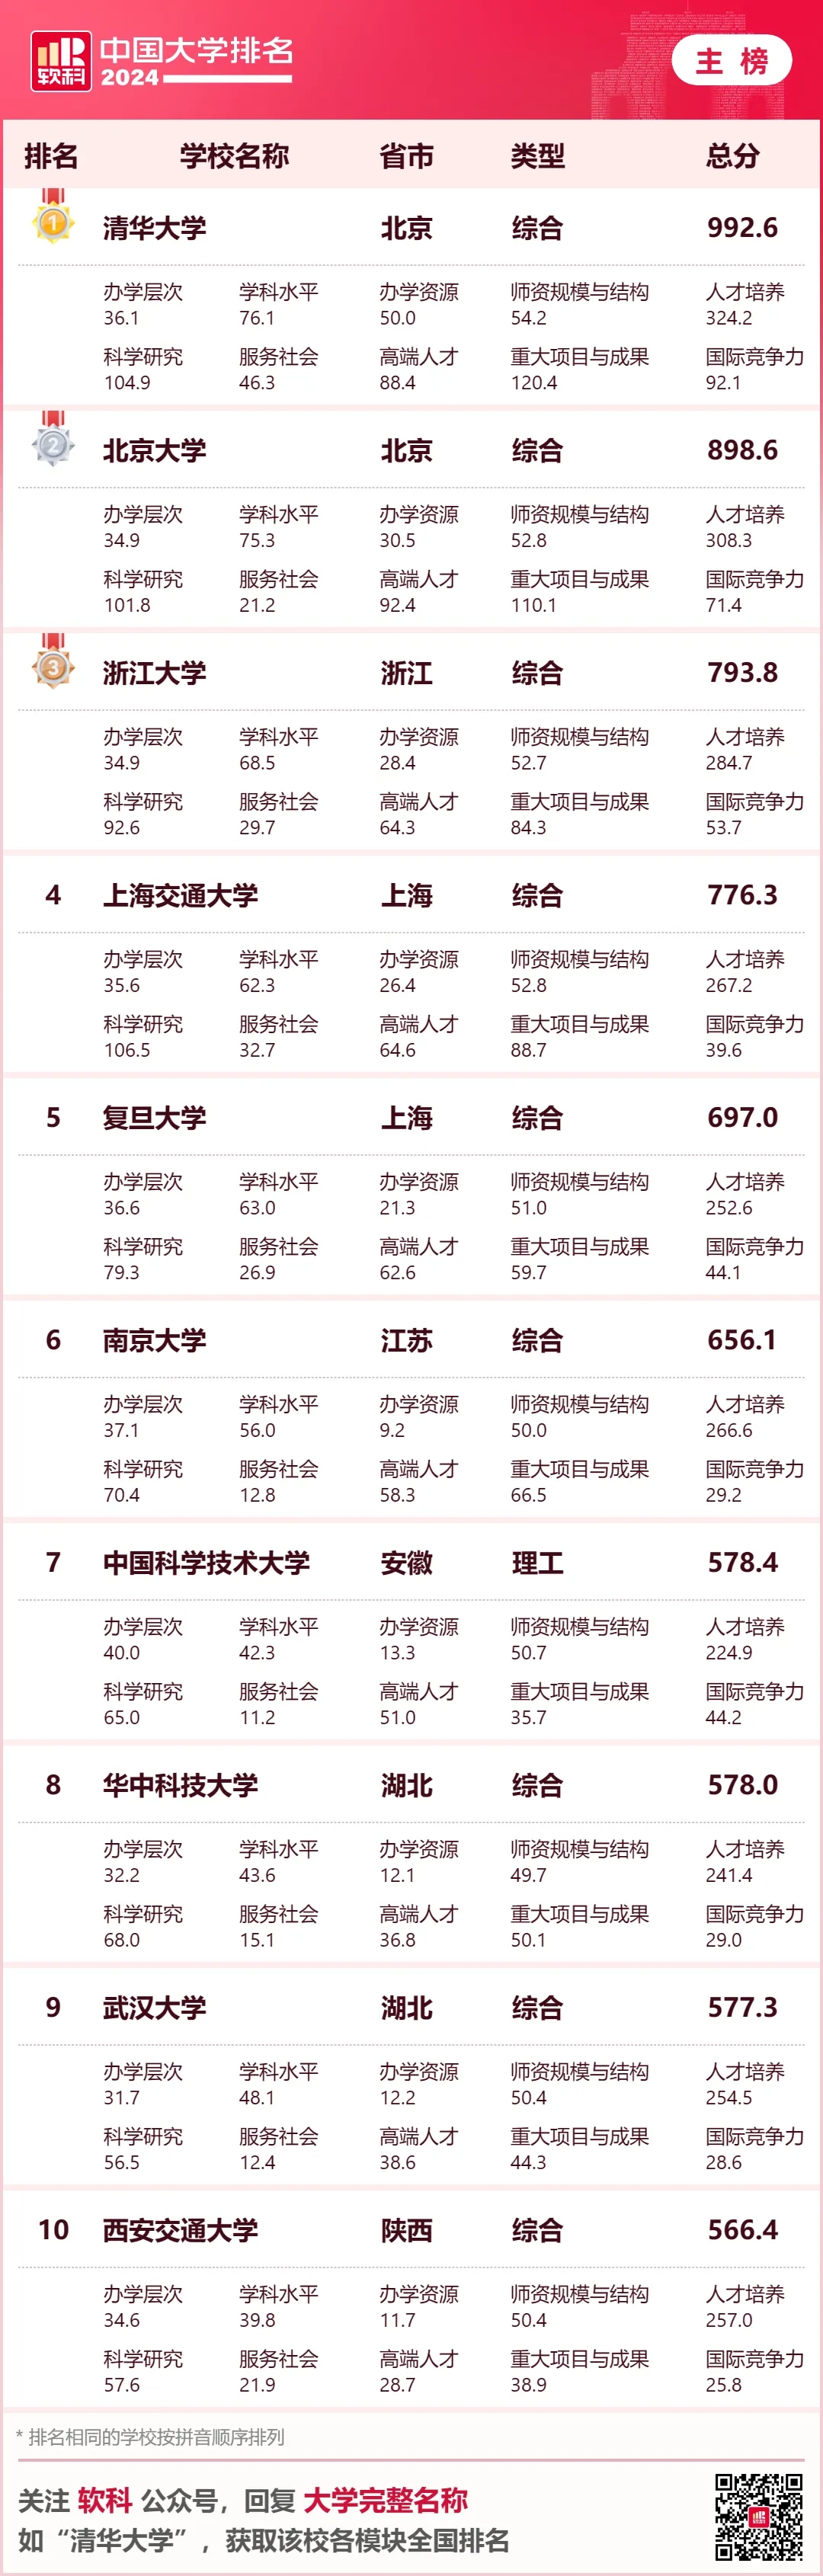 软科中国排名